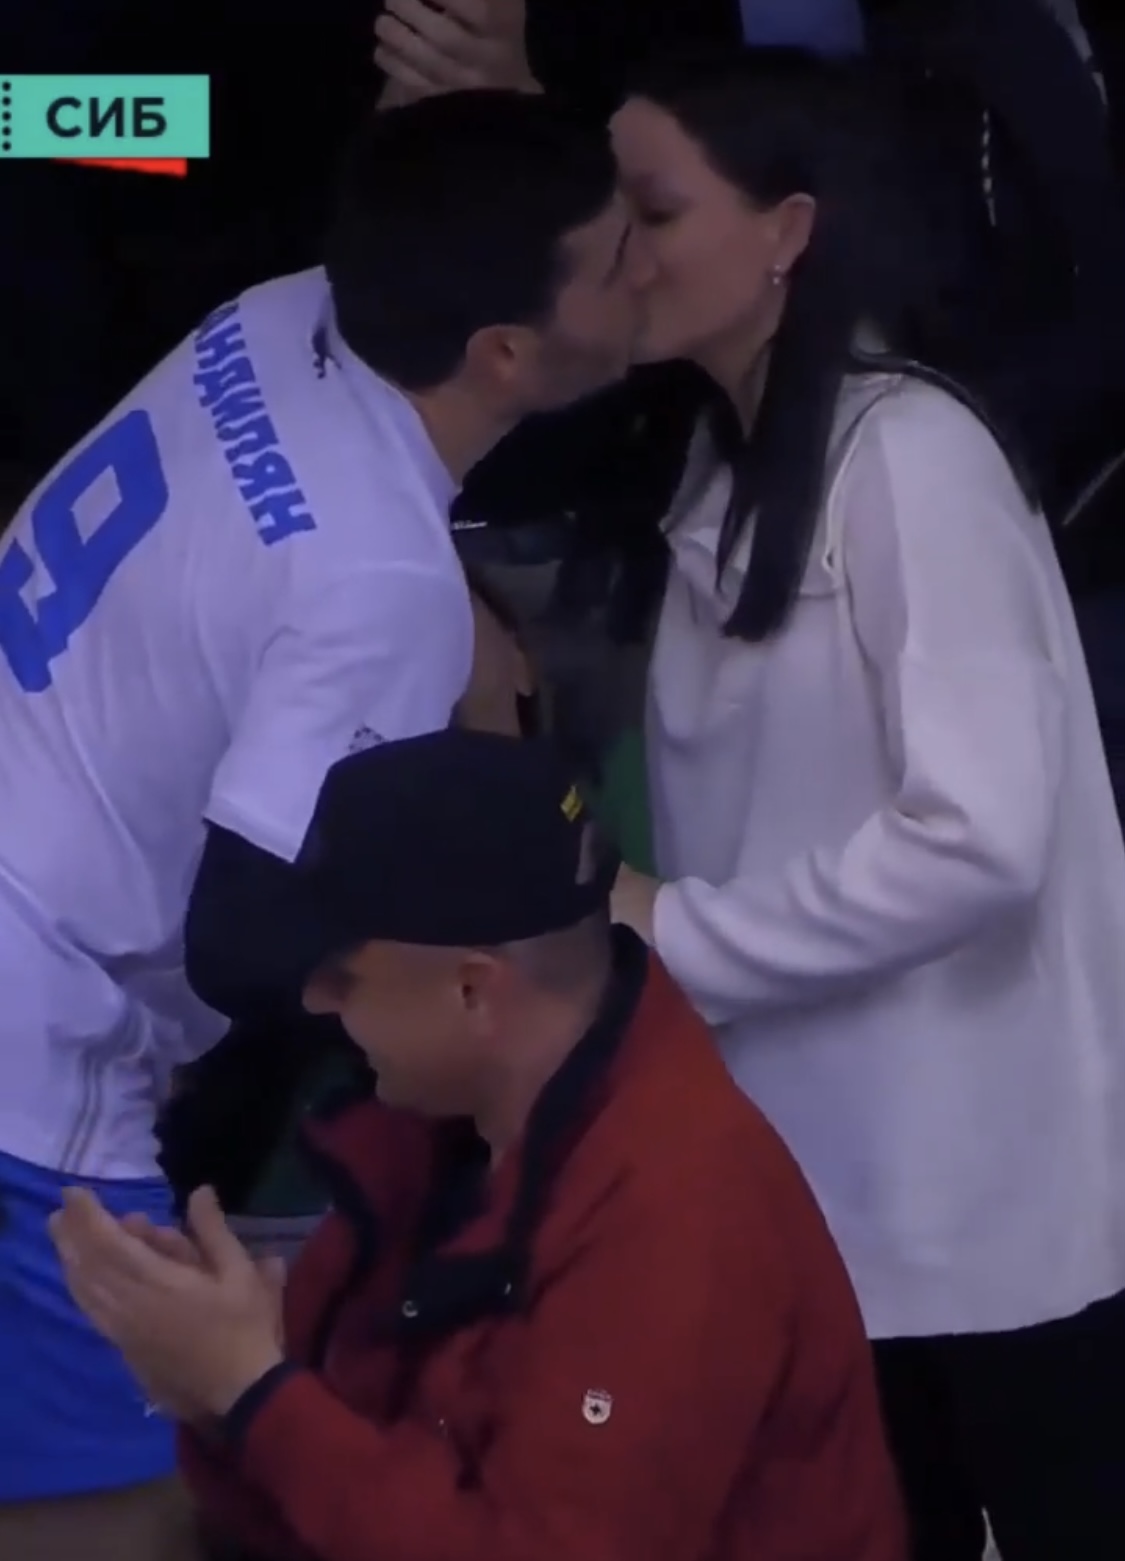 Спортсмен из Иркутска сделал предложение своей девушке во время матча(видео)